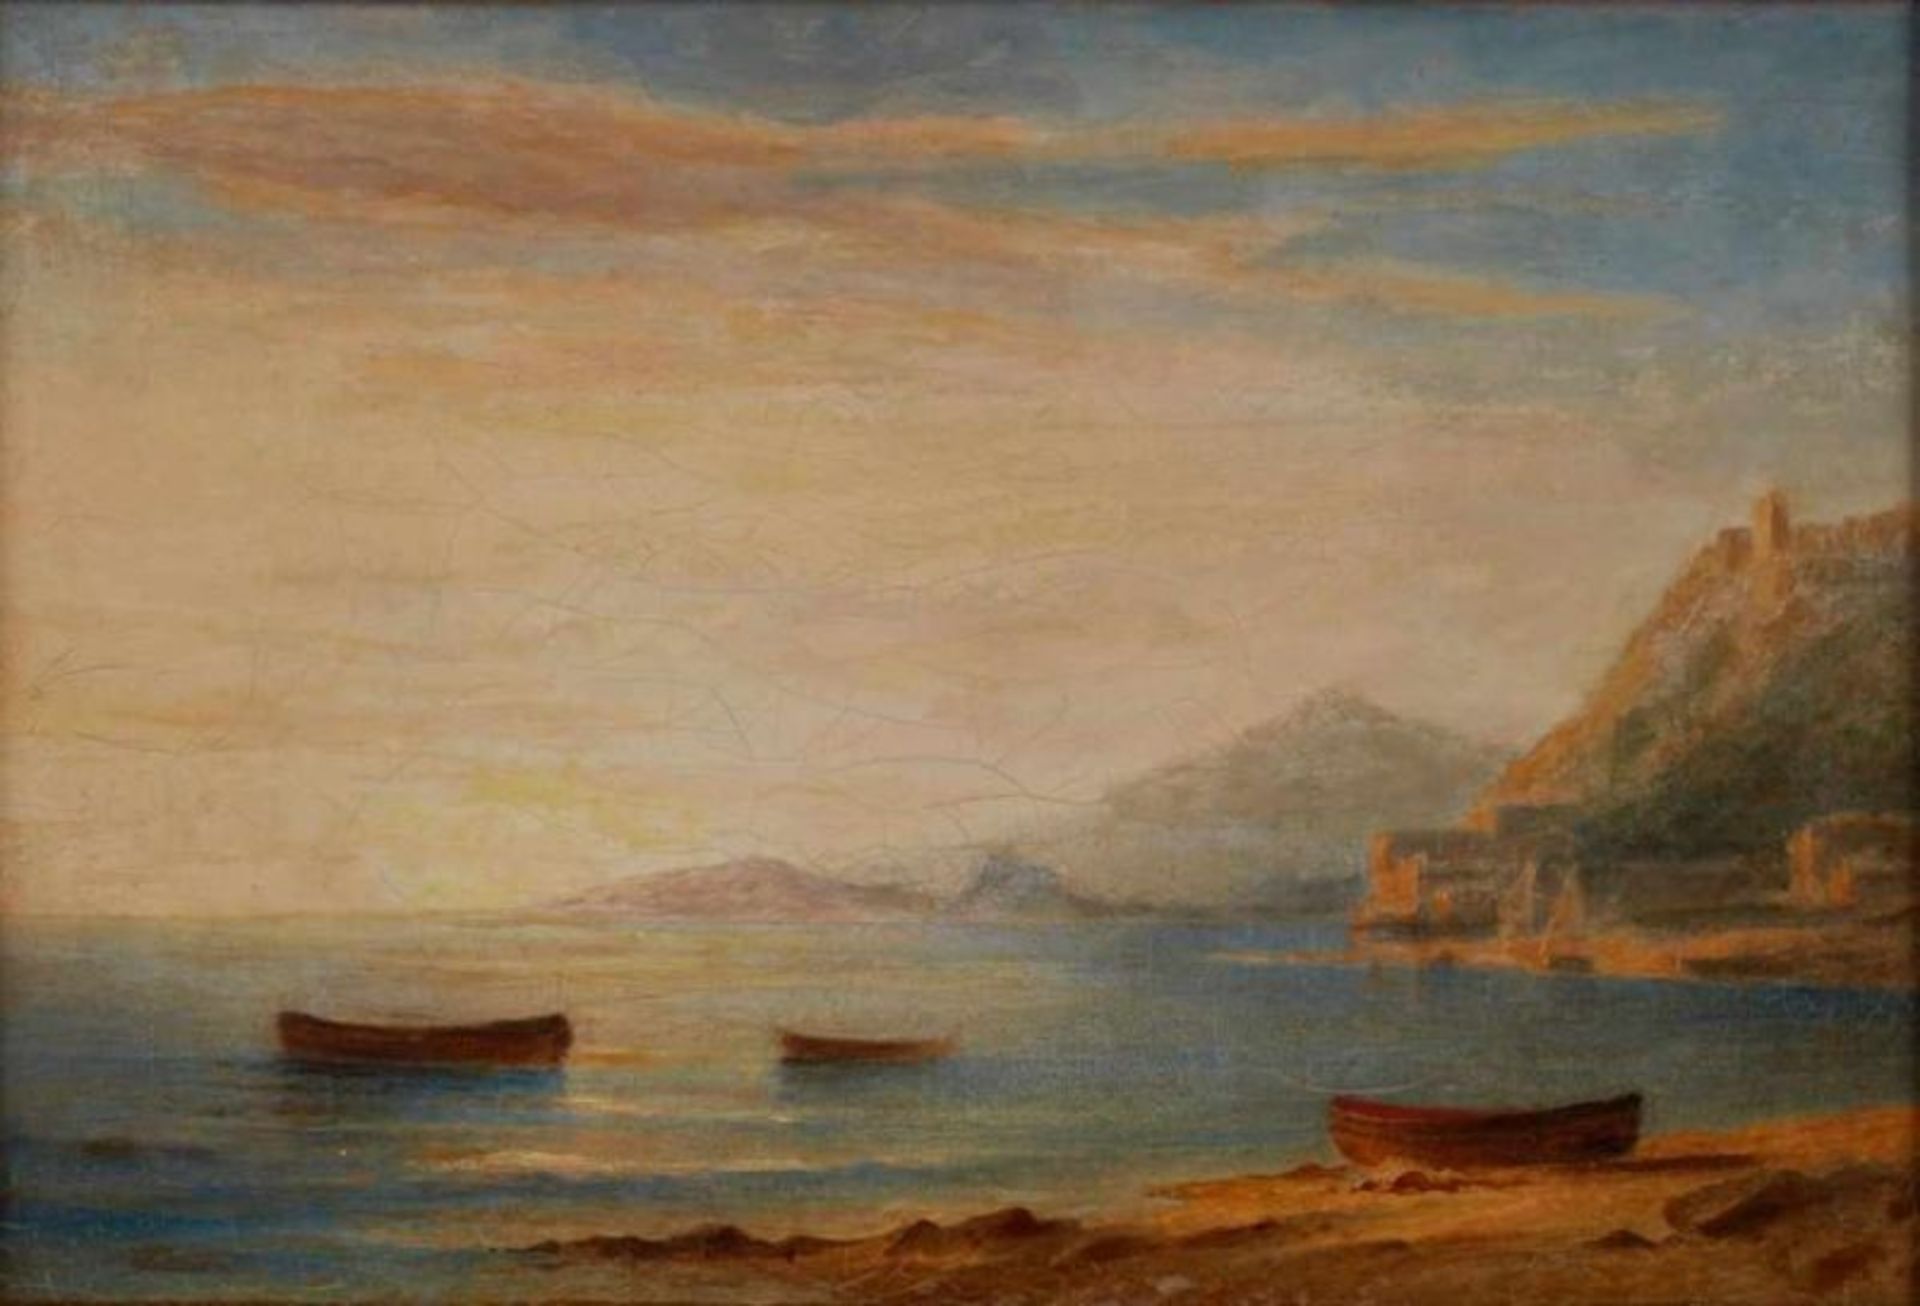 Gemälde/Ölstudie Carl Morgenstern 1811 Frannkfurt - 1893 Frankfurt "Italienische Küstenszene" - Bild 2 aus 6